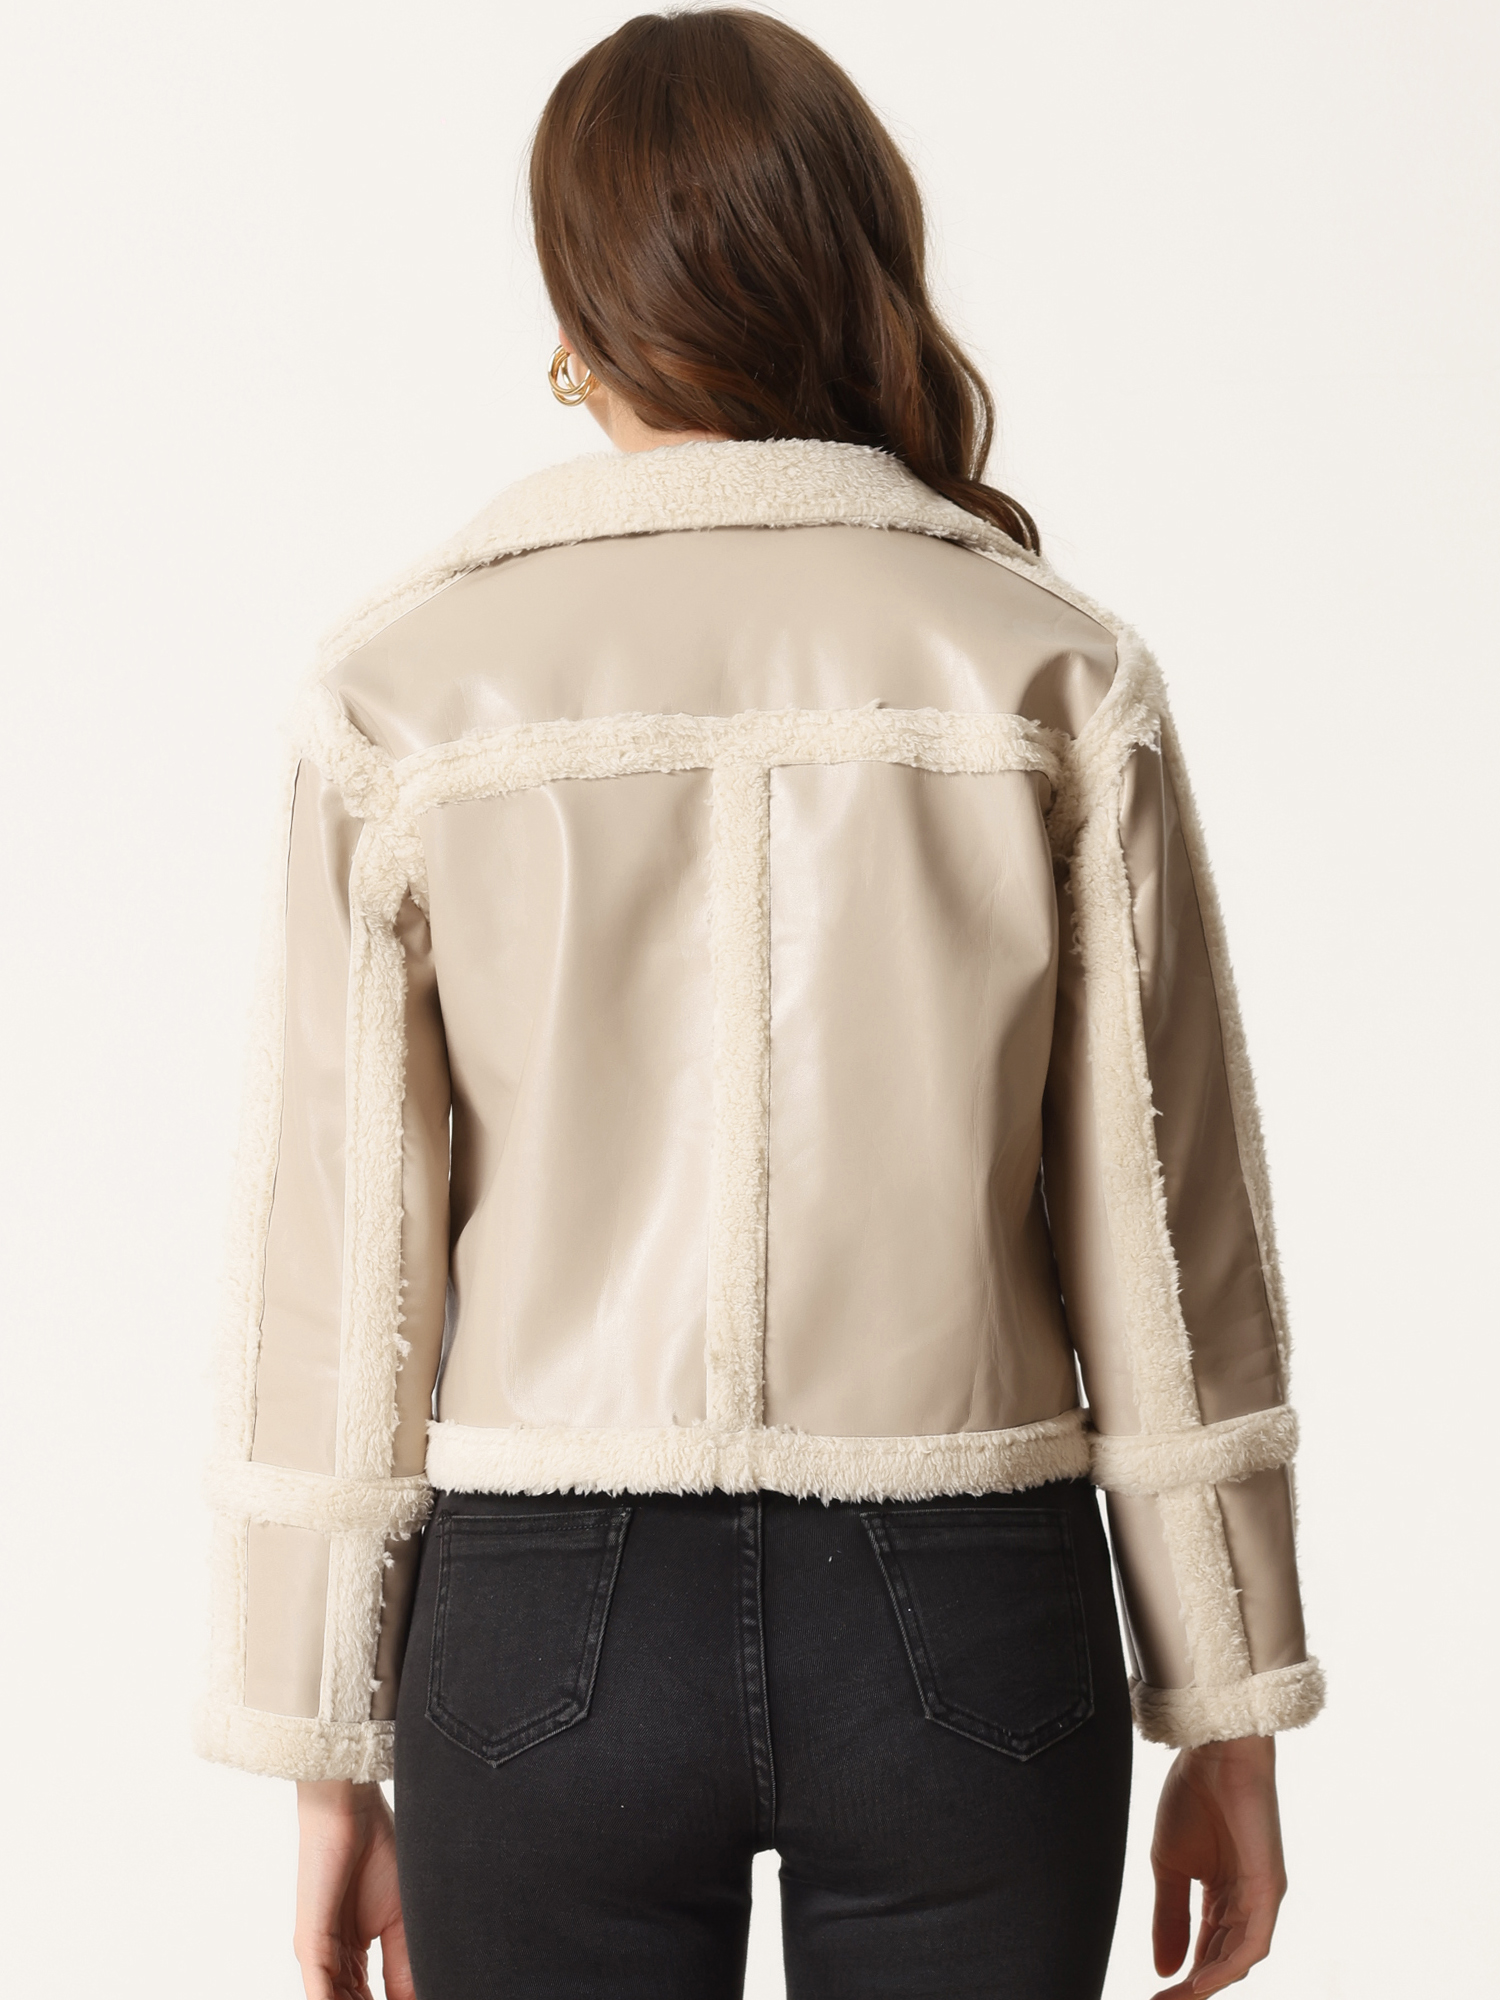 Unique Bargains Women's Faux Fur Paneled PU  Leather Thick Parka Jacket Warm Winter Coat